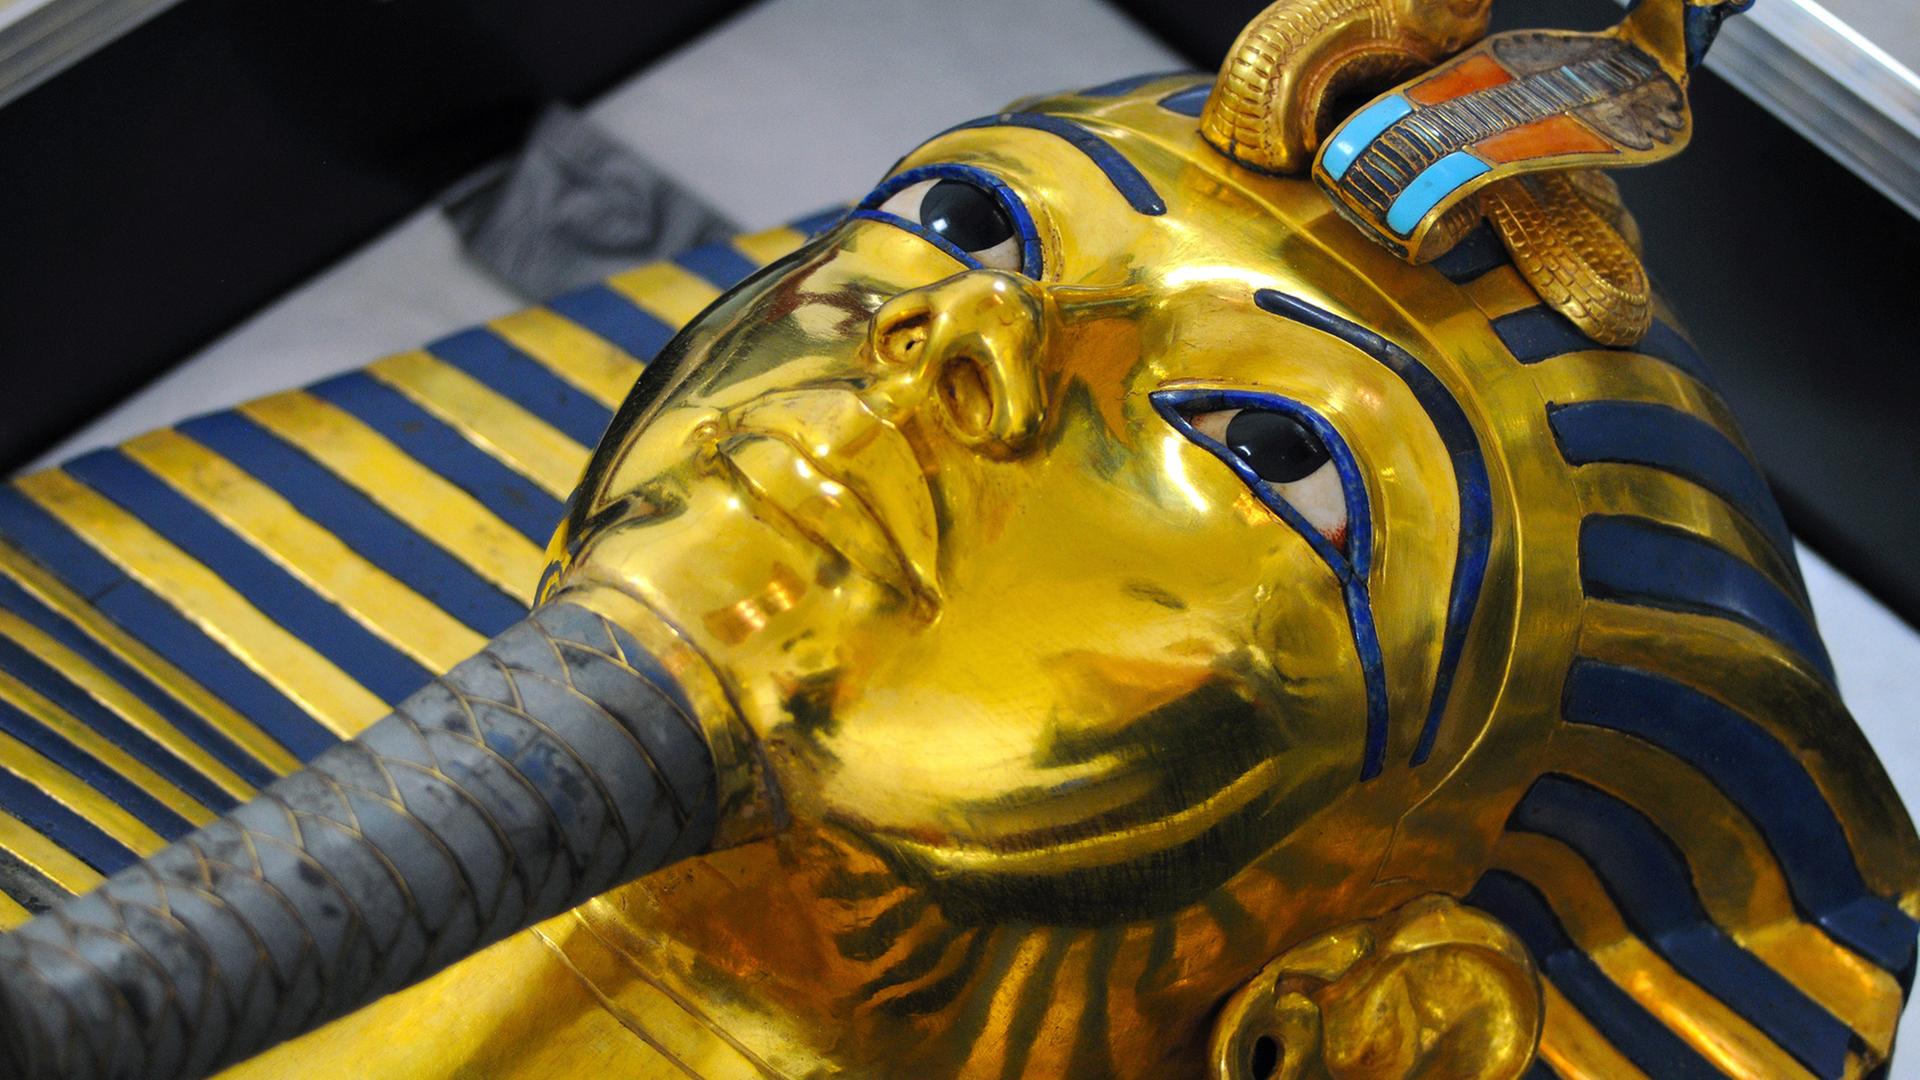 Die Totenmaske von Tutanchamun im Ägyptischen Museum in Kairo. Die Totenmaske des Tutanchamun im Ägyptischen Museum, aufgenommen am 12.10.2015. Durch eine Unachtsamkeit brach im August 2014 der Zeremonialbart der goldenen Totenmaske des Pharaos Tutanchamun im Ägyptischen Museum in Kairo ab. Daraufhin wurde der Bart mit einem Epoxitkleber eilig wieder an die Maske geklebt. Seit einiger Zeit ist ein Restauratorenteam vom Römisch-Germanischen Zentralmuseum in Mainz damit beschäftigt, die Maske zu restaurieren, soweit dies möglich ist. Mit Lindenholzstäbchen wird Millimeter für Millimeter des Klebers mechanisch abgetragen, Ende des Jahres, so hofft man, sei diese Arbeit erledigt.